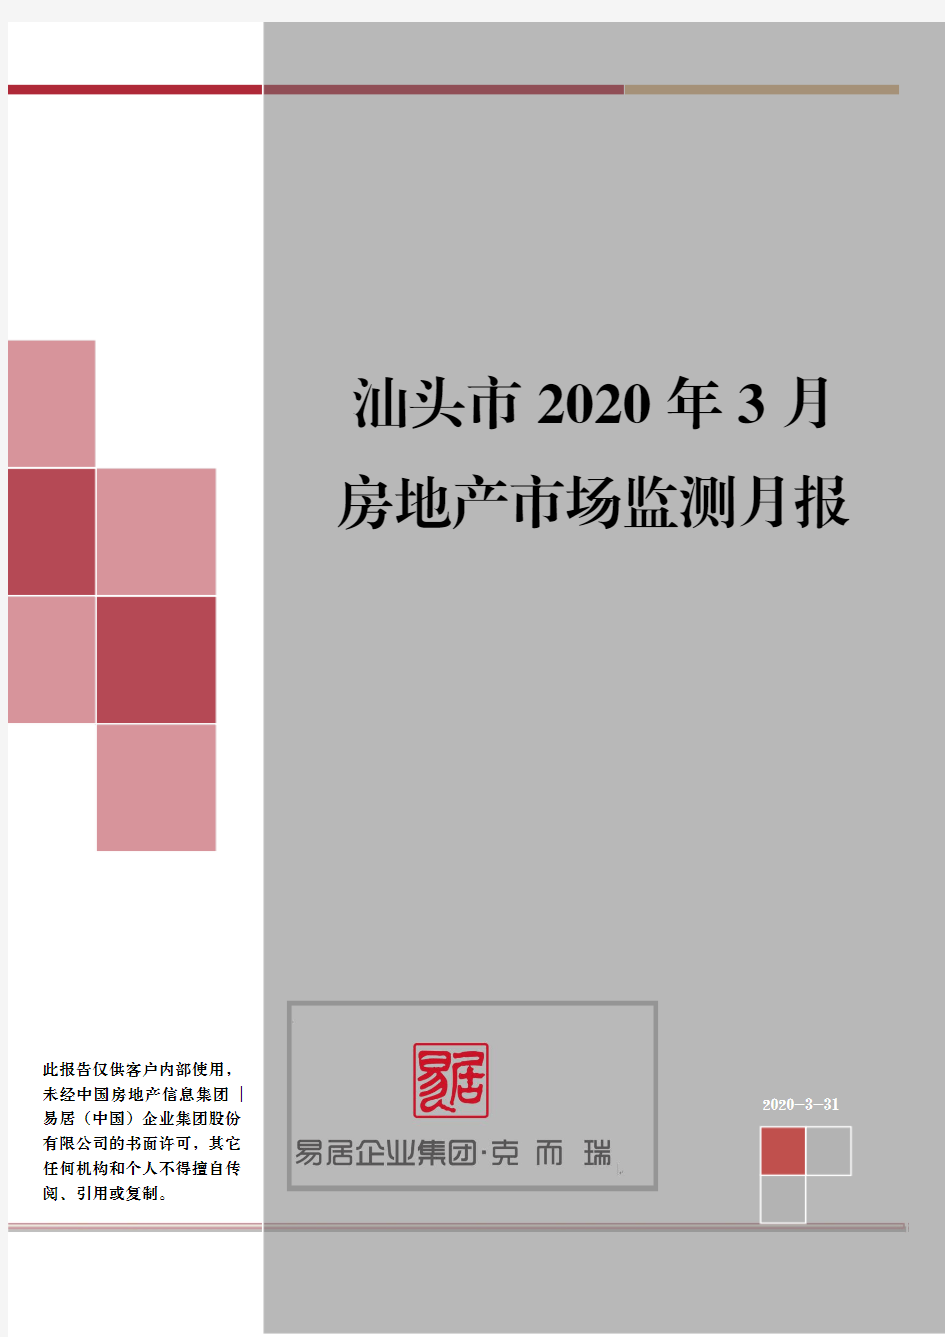 汕头市房地产市场报告(2020年3月份市场月报)